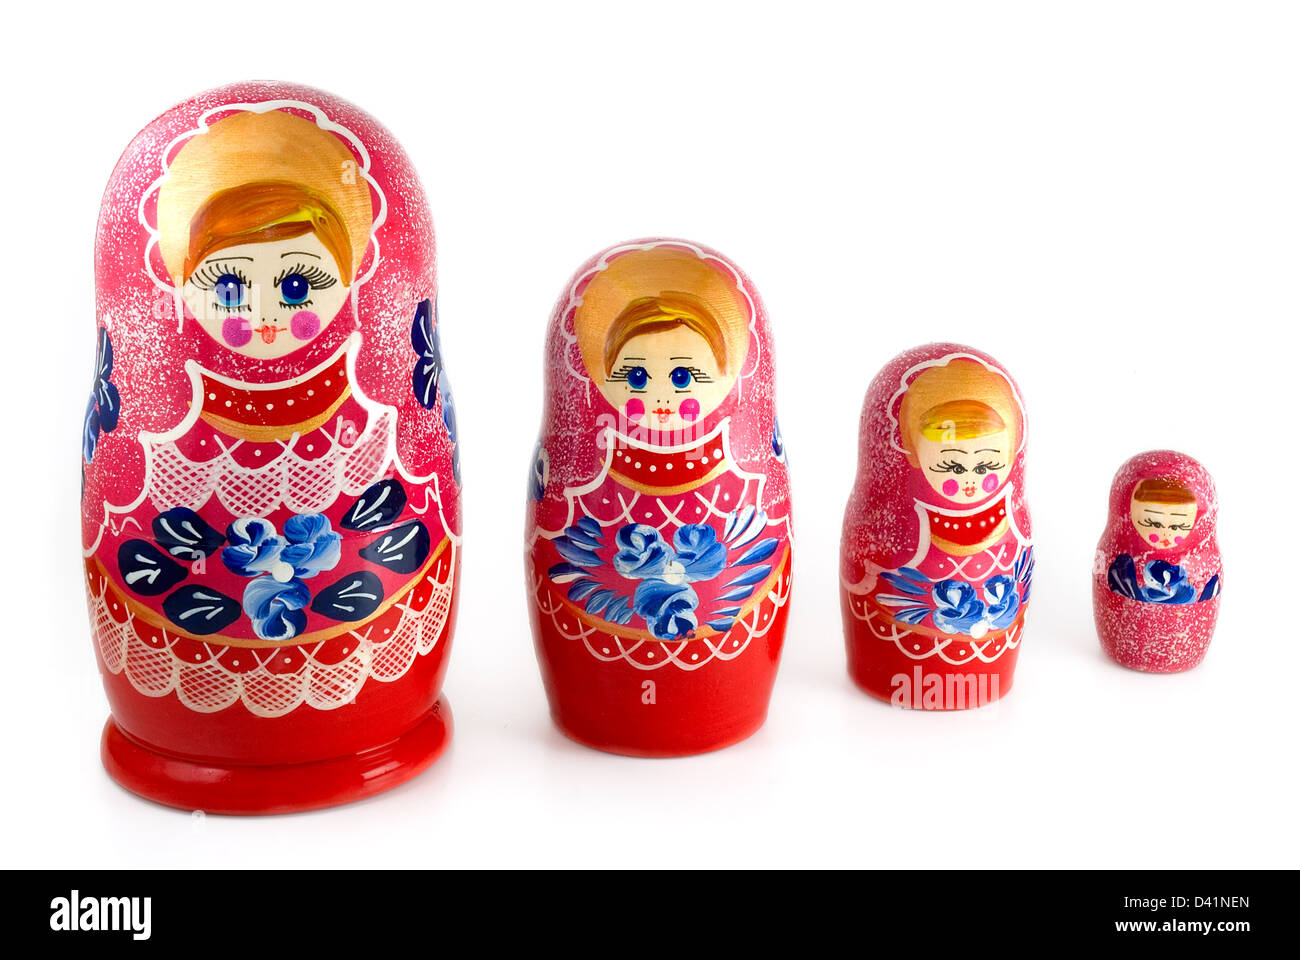 Les poupées russes sont imbriqués photographié sur white Banque D'Images